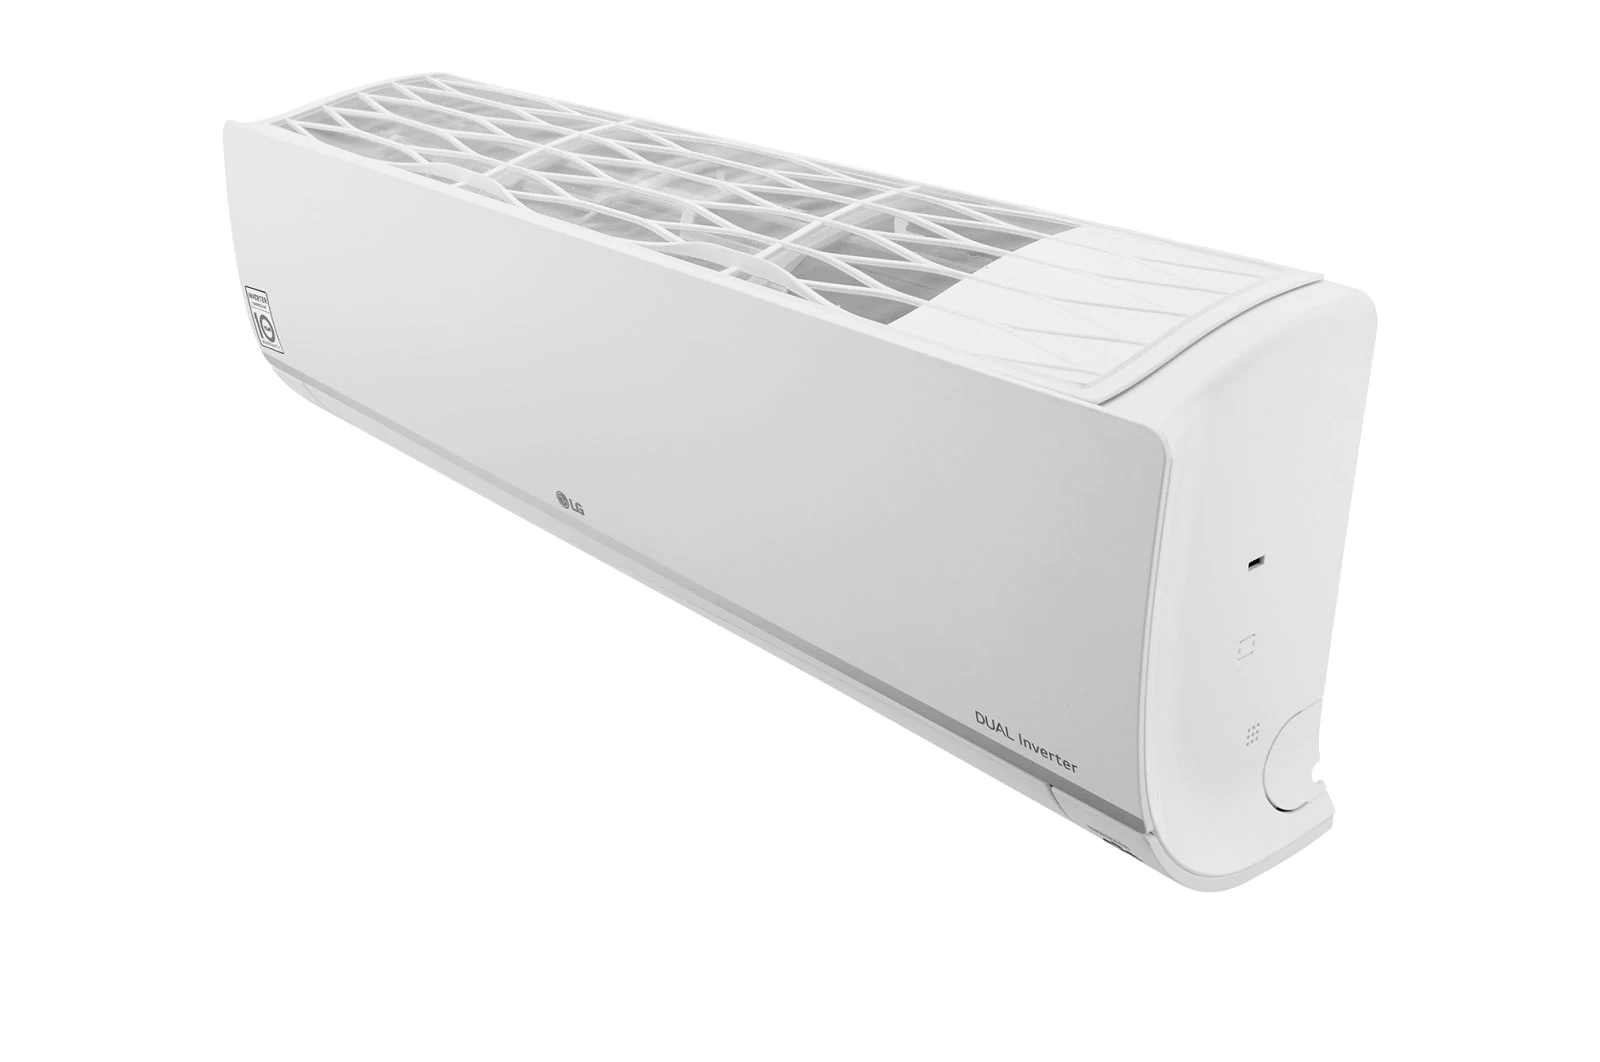 climatiseurs - climatiseur-dualcool-inverter-12000-btu - DSP12ALG - lg - Tinsal - Algérie